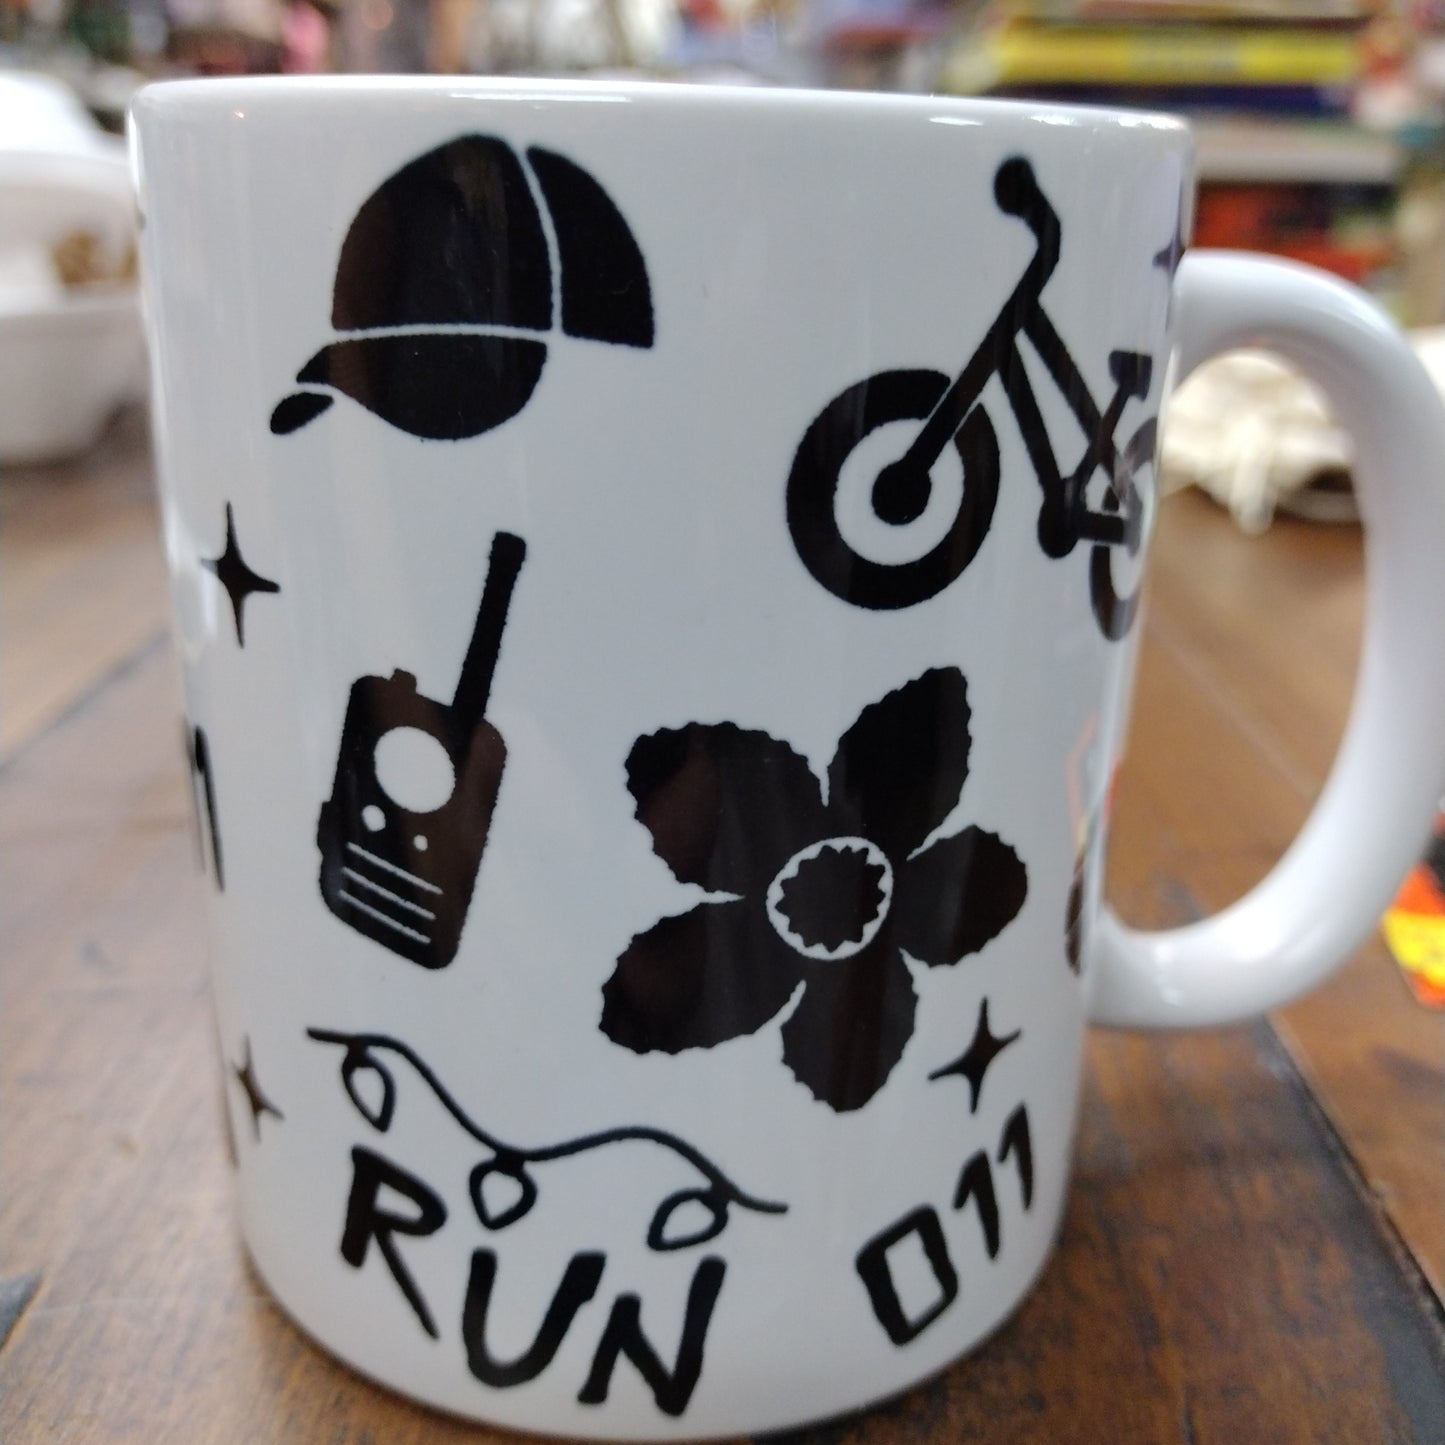 Stranger Things inspired mugs